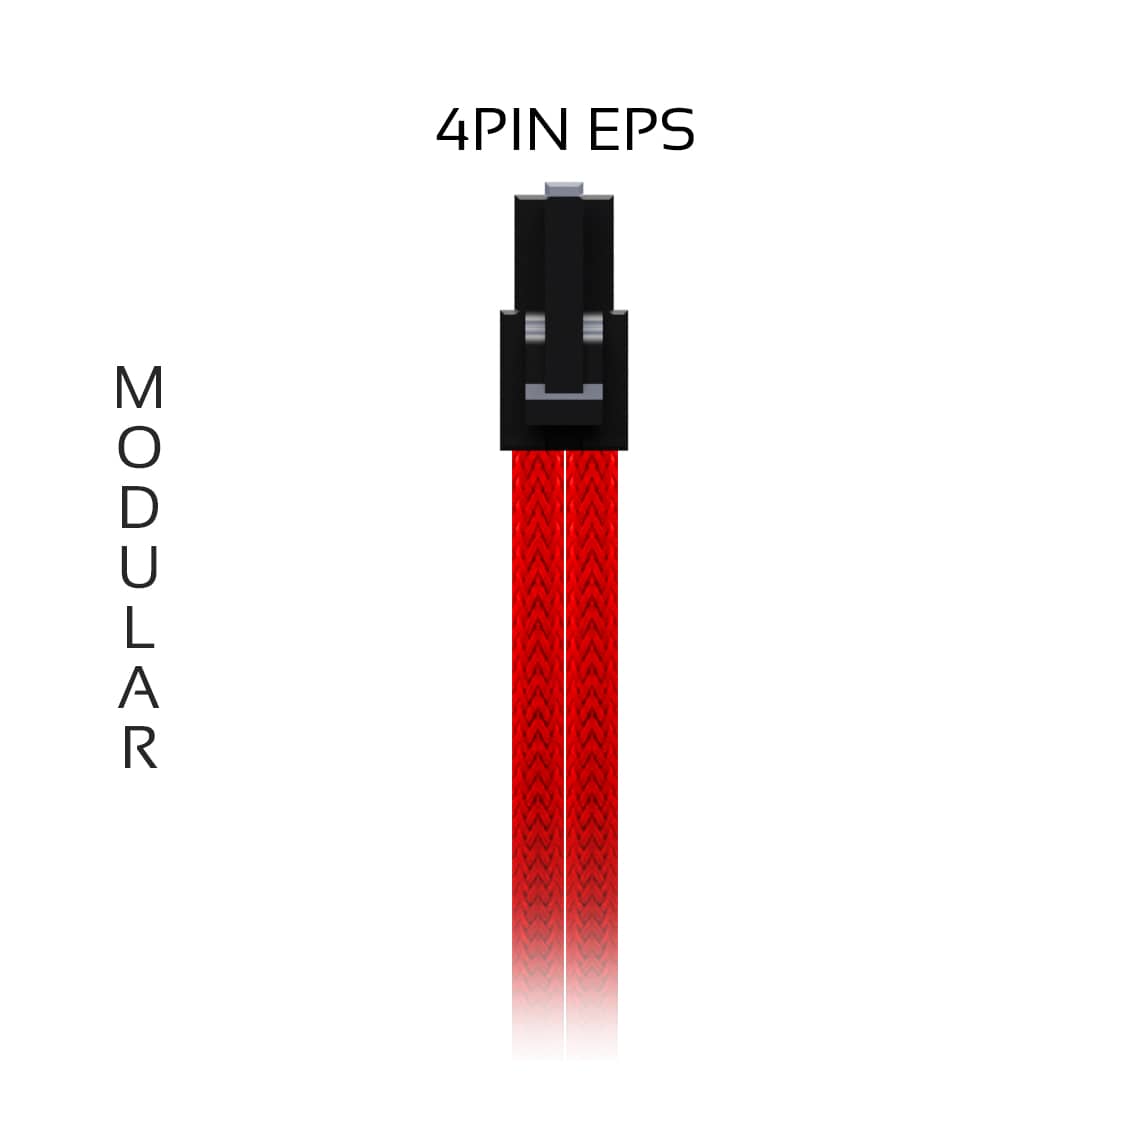 4pin-eps-modular